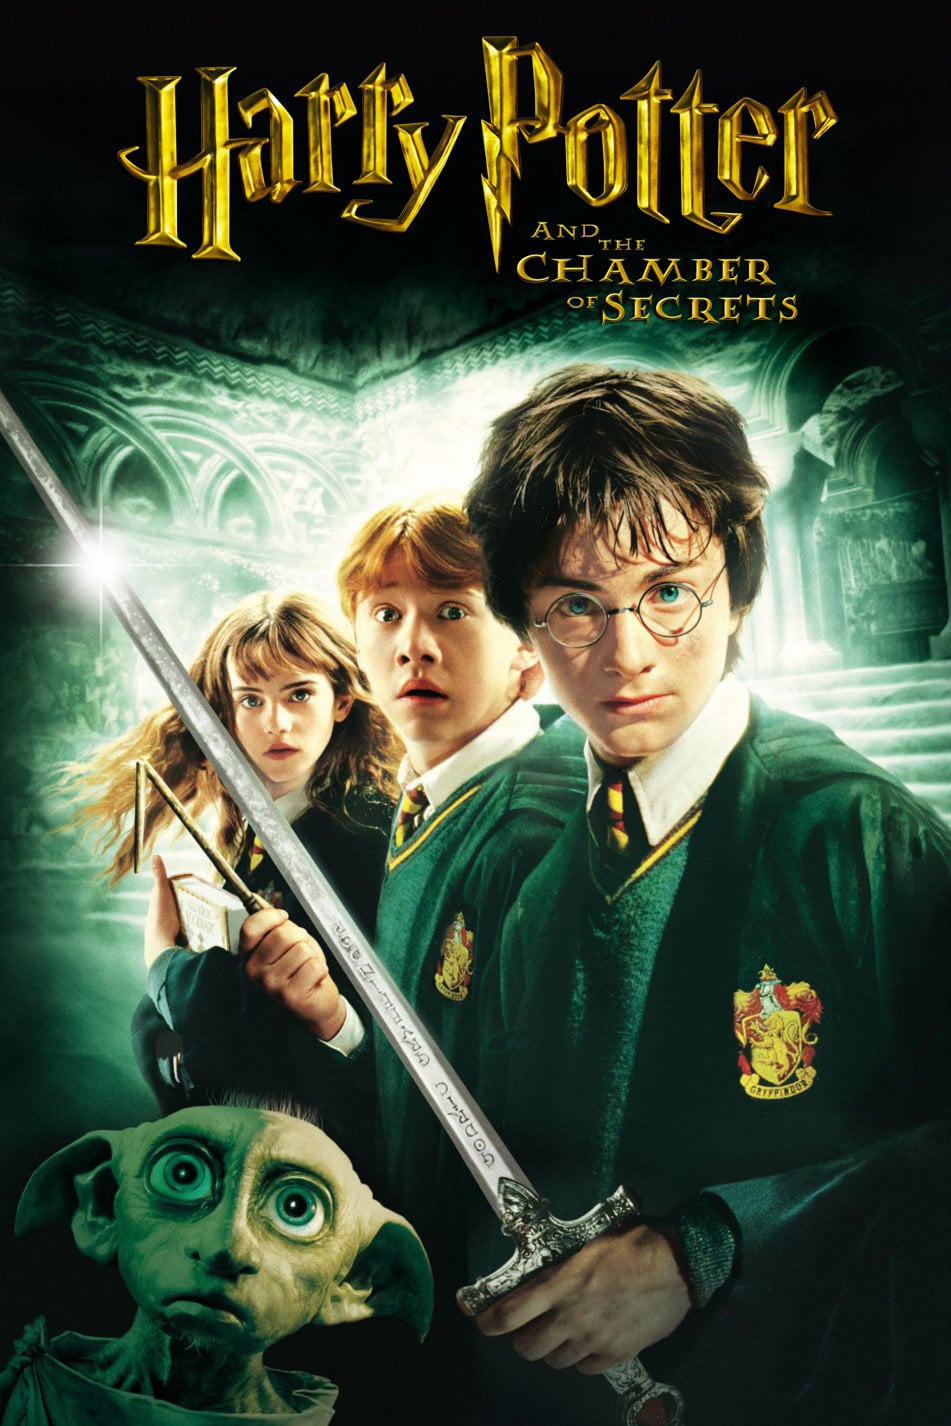 Harry Potter e a Câmara Secreta